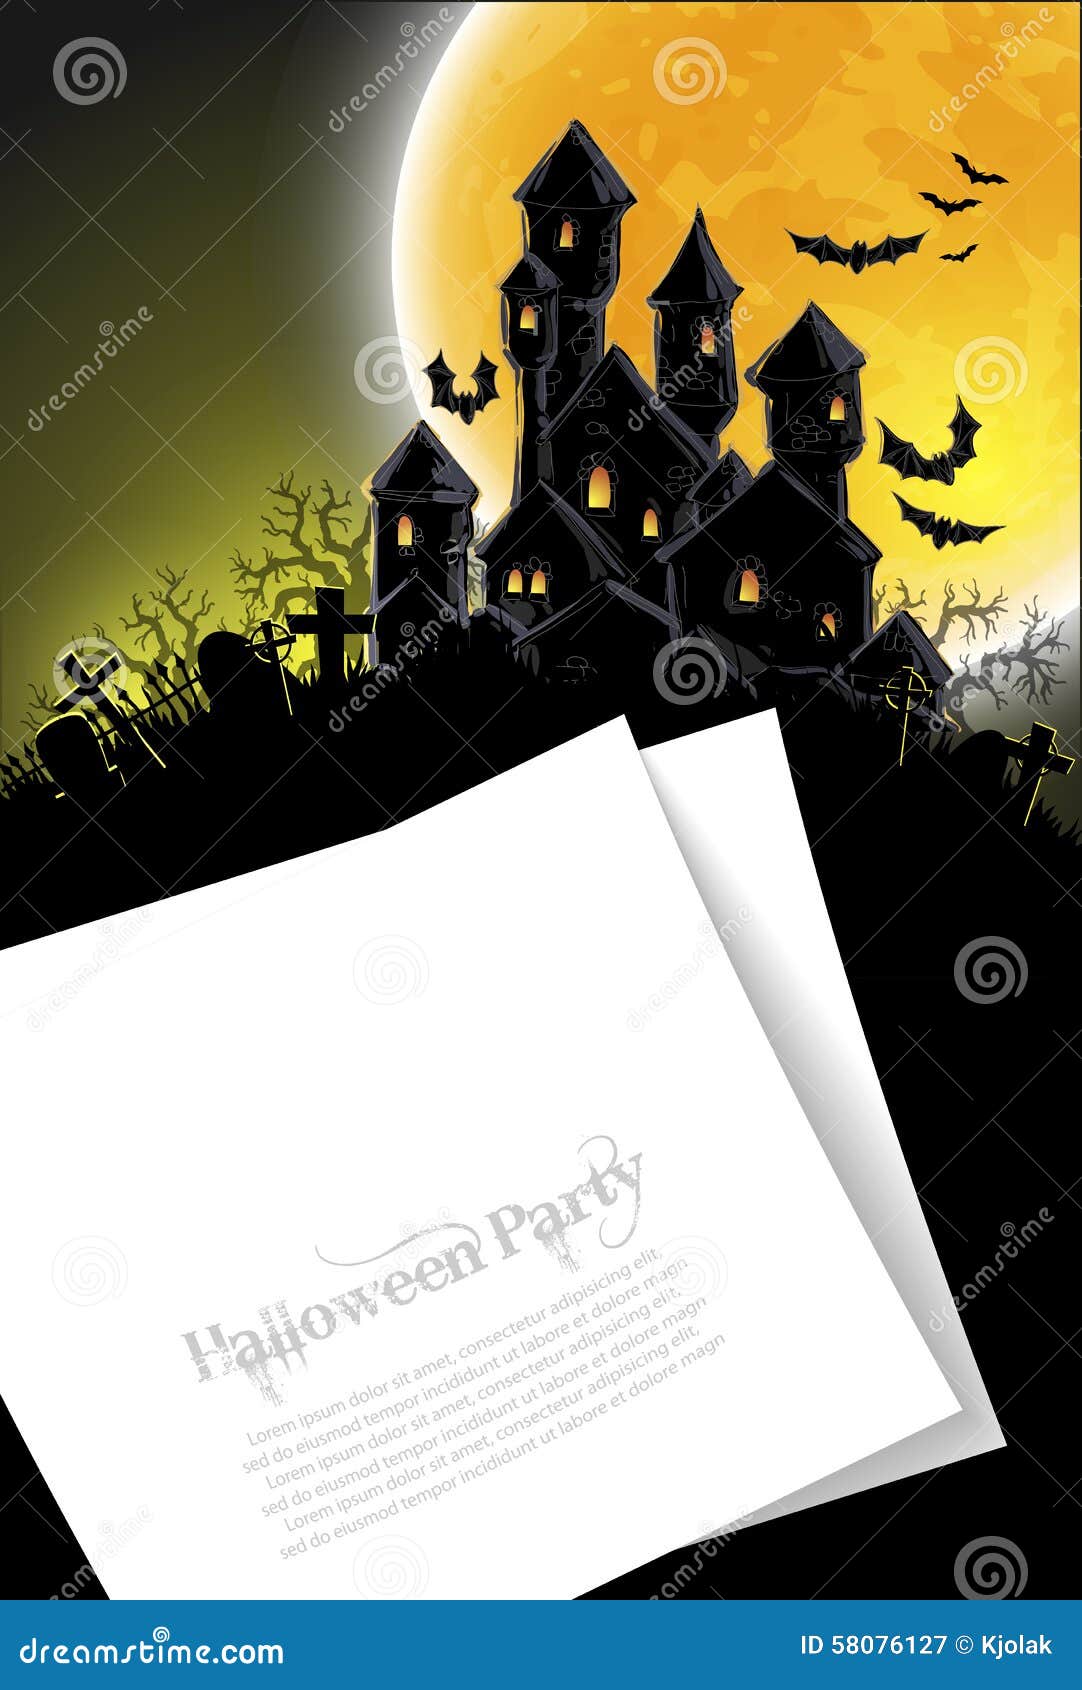 Halloween background stock vector. Illustration of scrapbook - 58076127